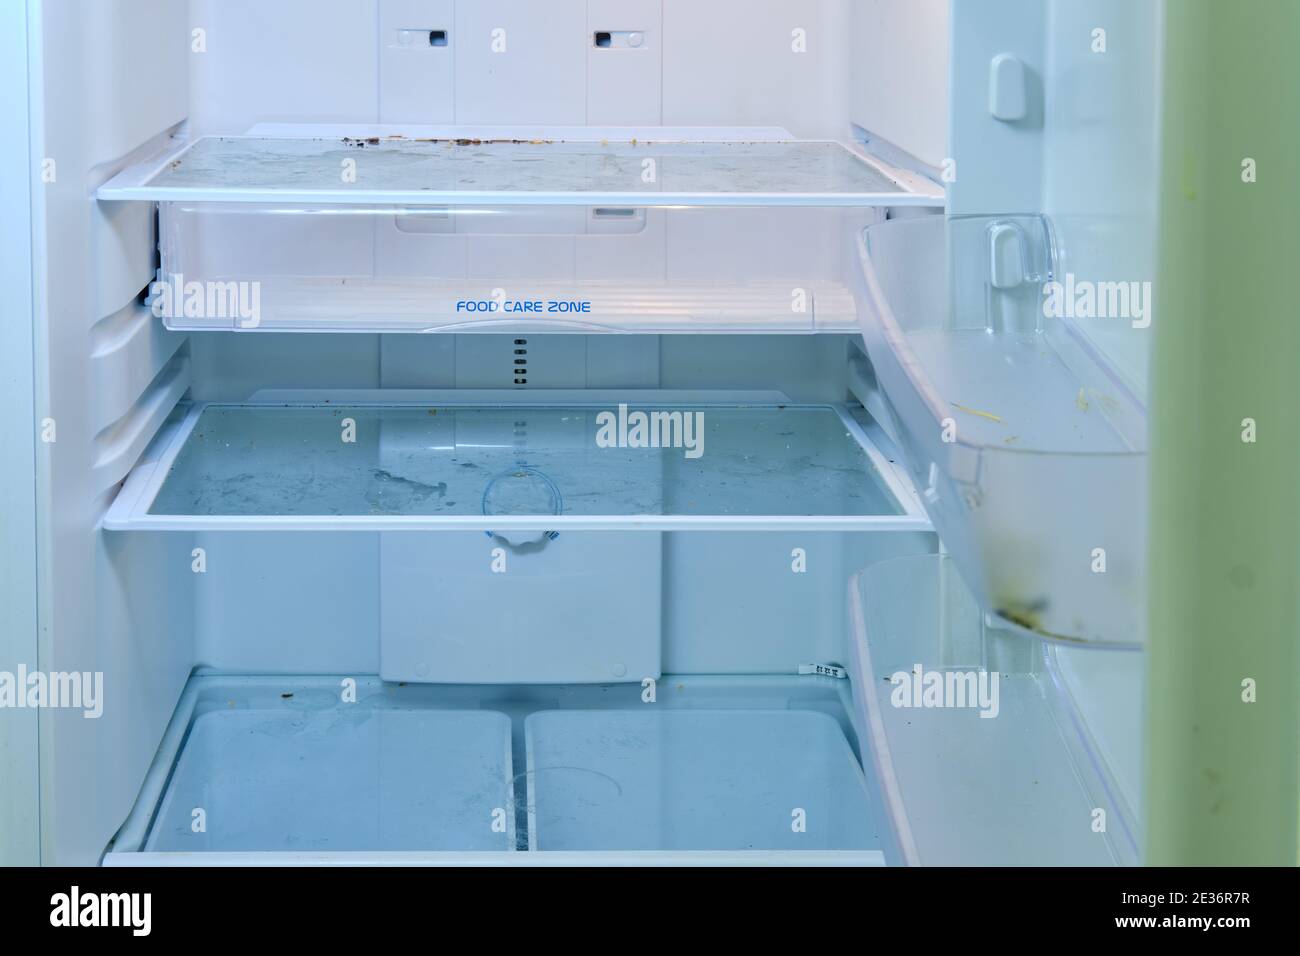 Dreckiger Kühlschrank mit offener Tür, der gewaschen werden muss Reinigung  Stockfotografie - Alamy